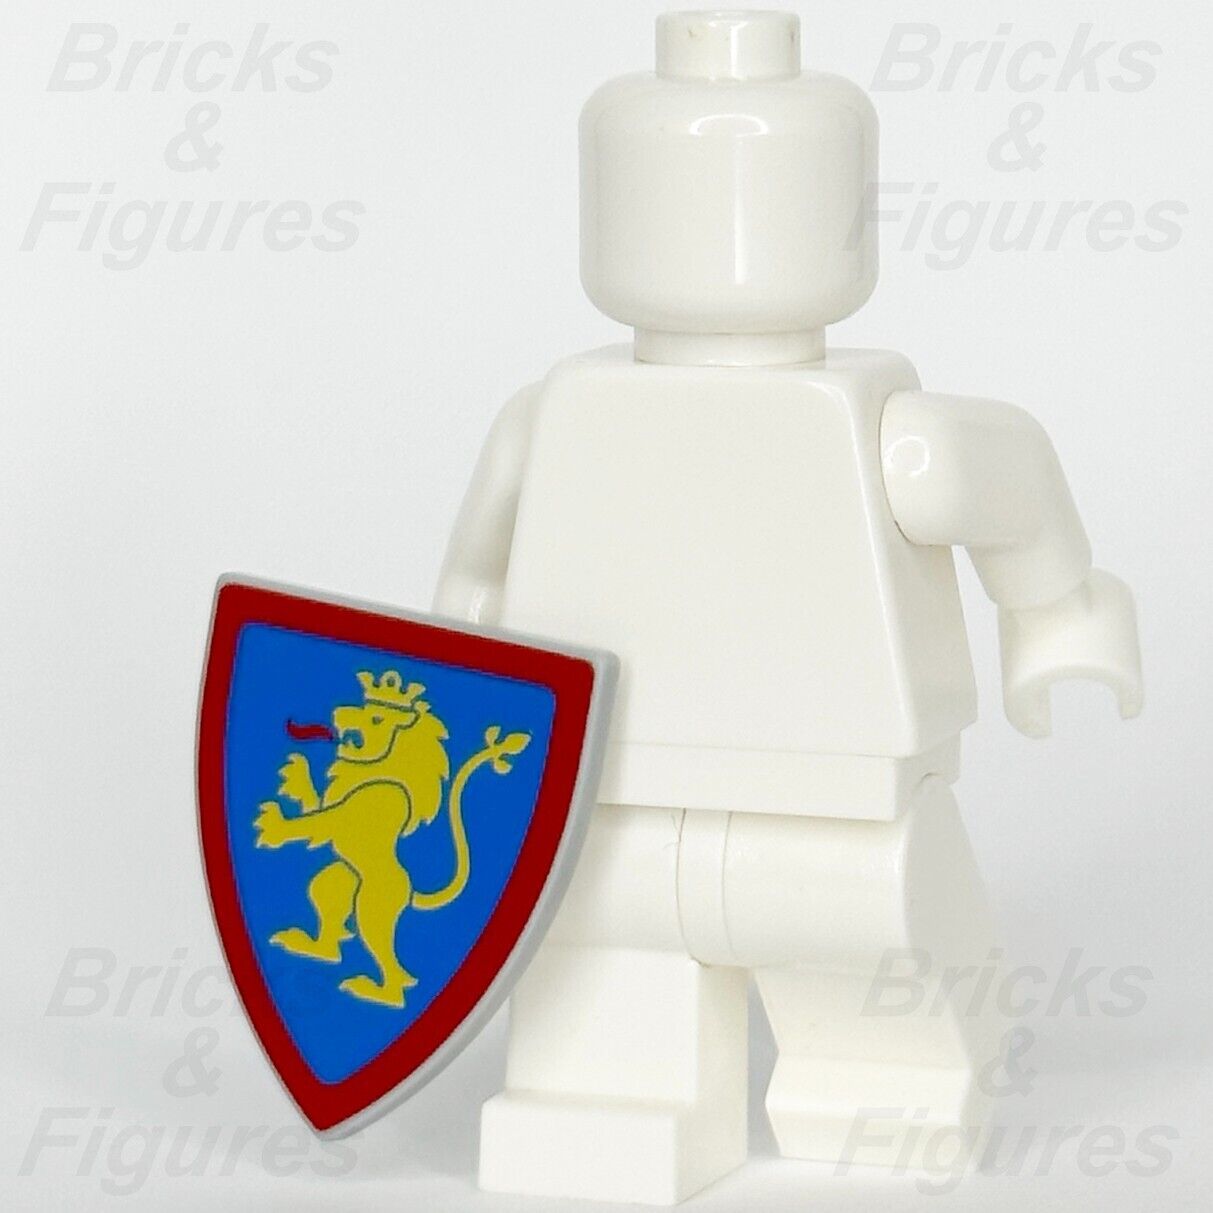 LEGO Castle Lion Knights Shield Minifigure Weapon Part Yellow Lion 10305 x 1 - Bricks & Figures